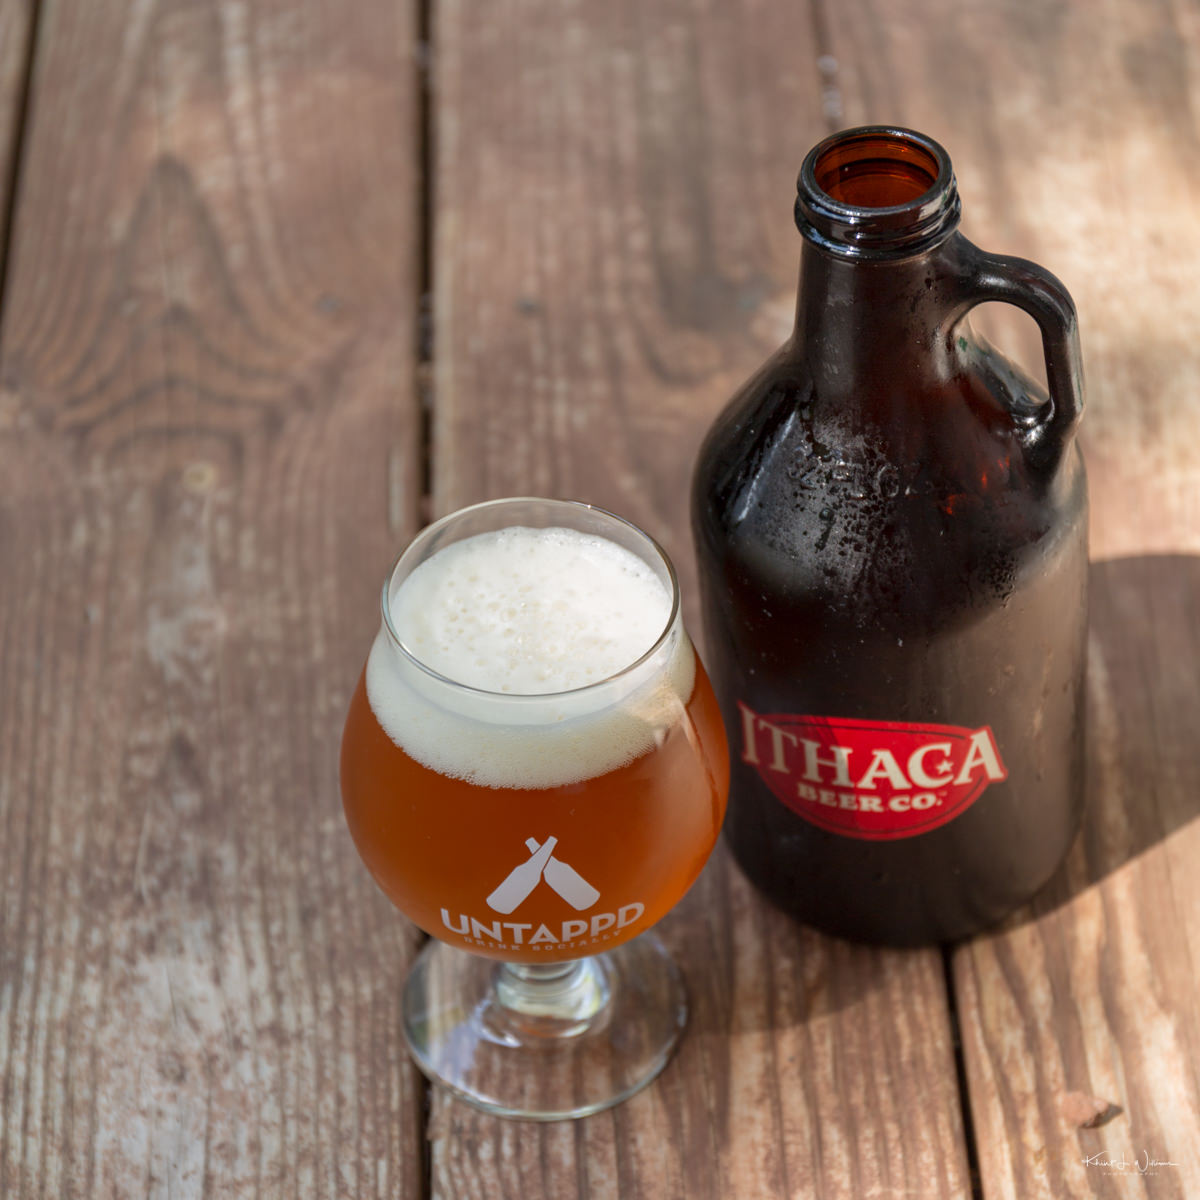 Ithaca Beer Company's Creeker